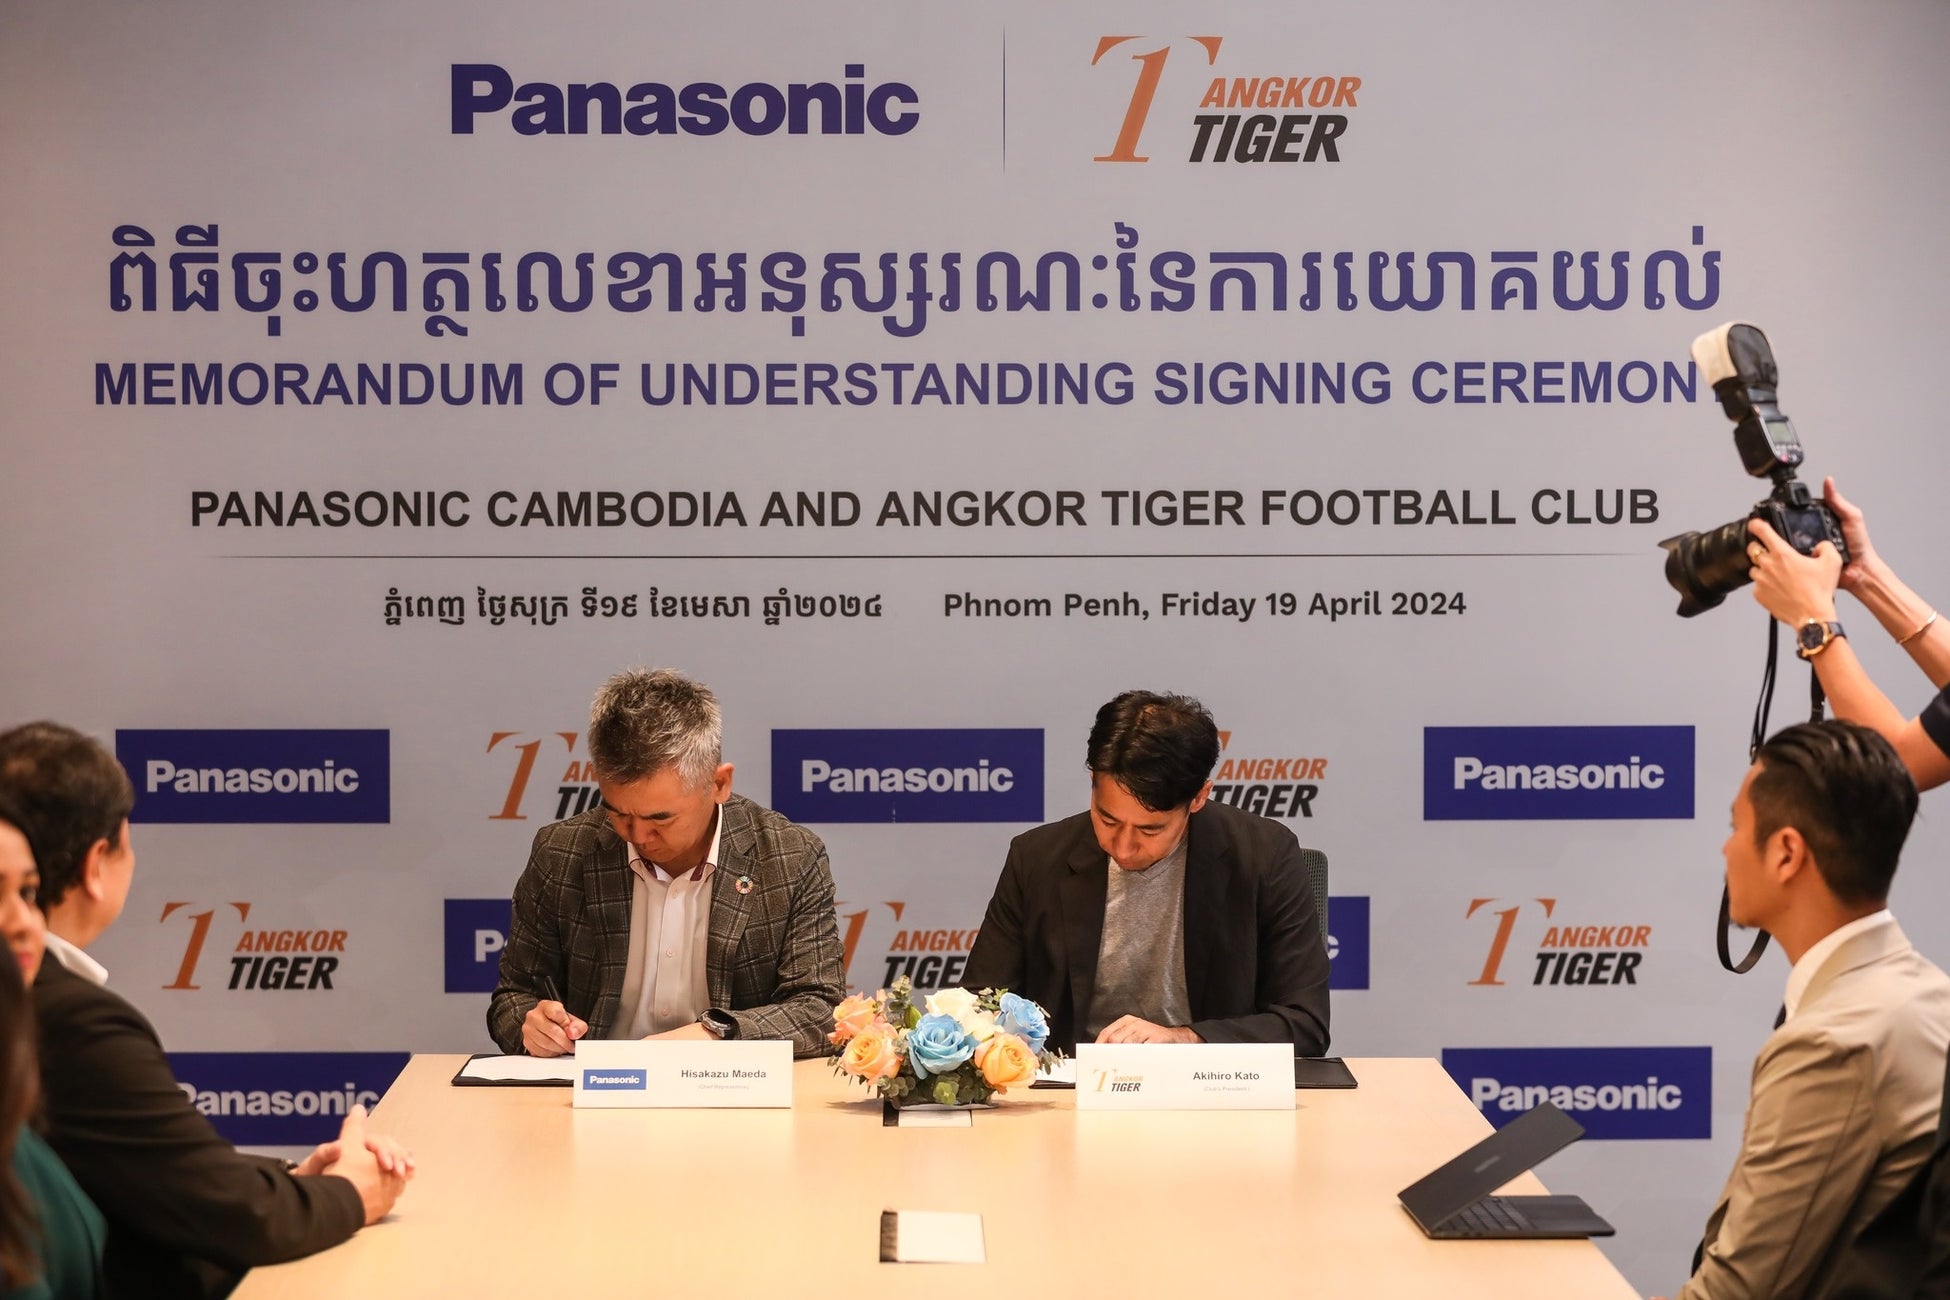 パナソニックカンボジアがアンコールタイガーFCとパートナーシップ契約締結を発表